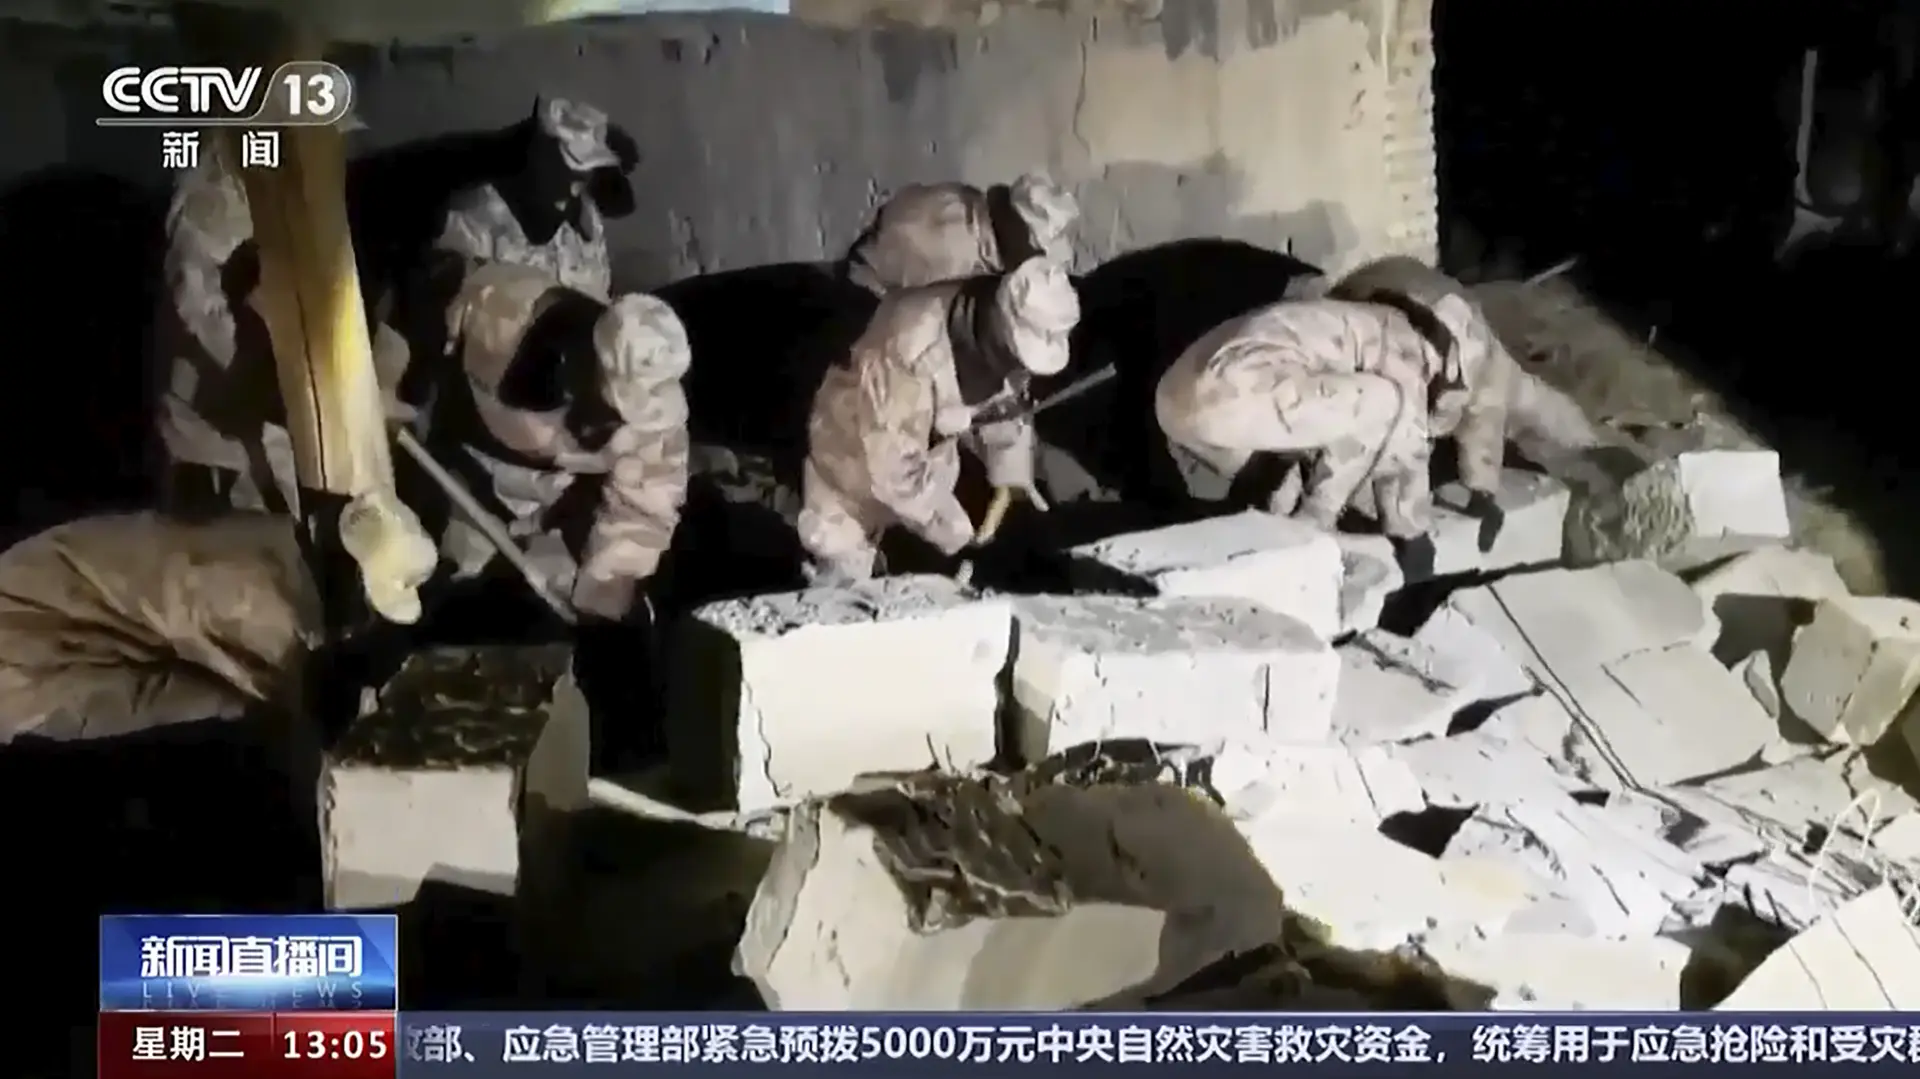 kina zemljotres CCTV via AP via Tanjug-65af929a21012.webp